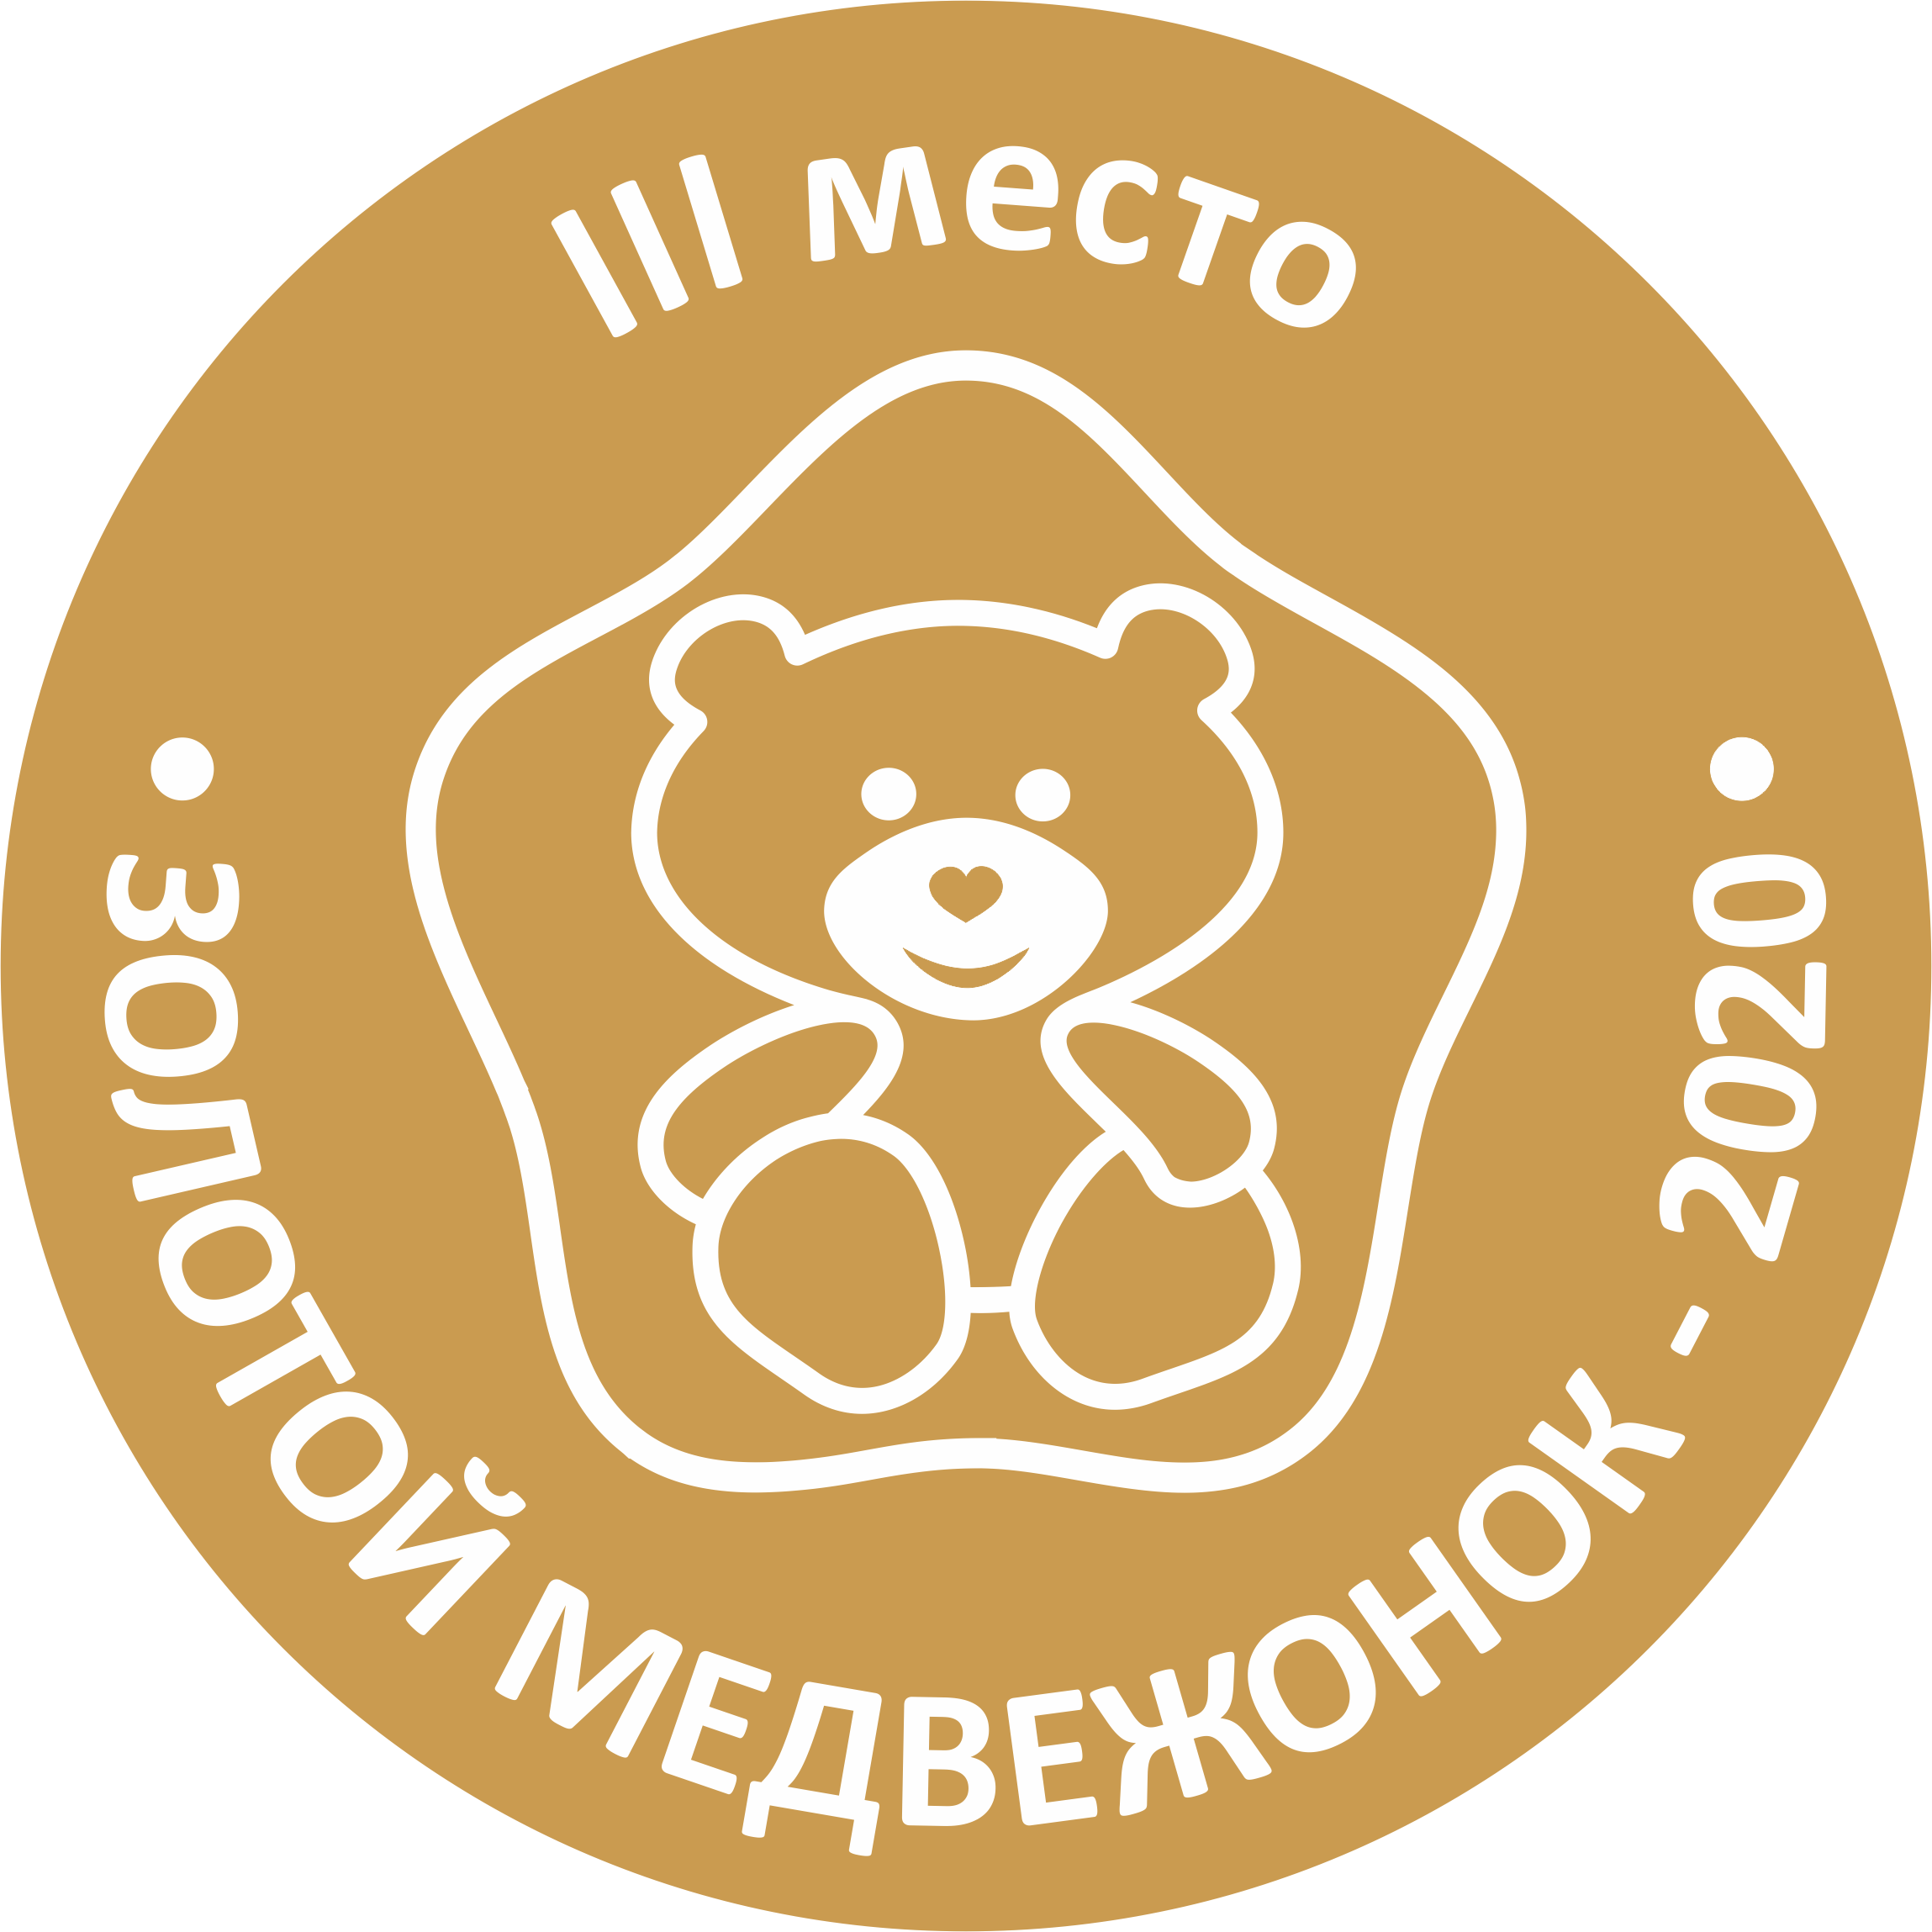 Золотой медвежонок 2020 - III место